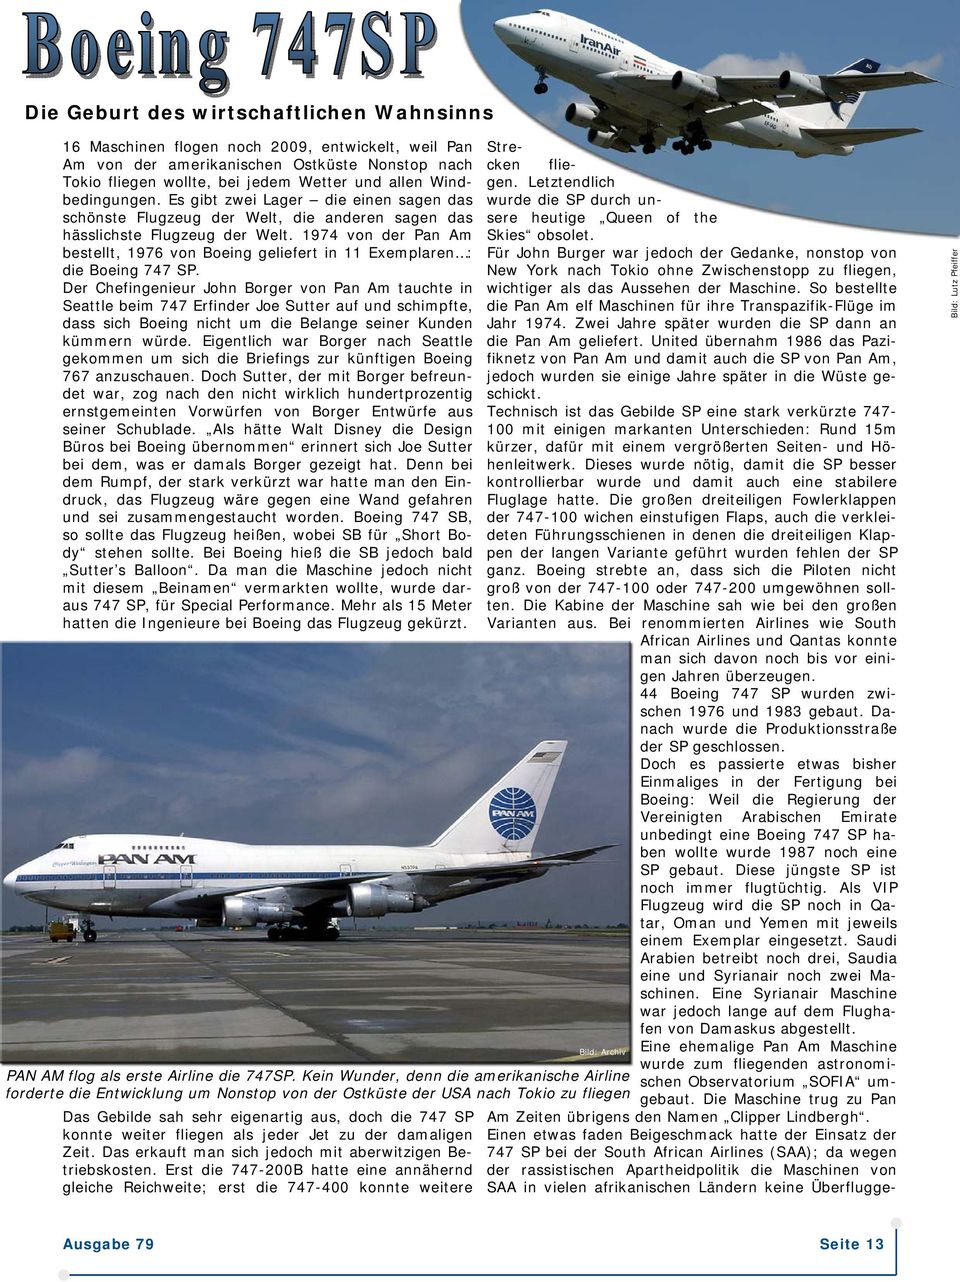 1974 von der Pan Am bestellt, 1976 von Boeing geliefert in 11 Exemplaren : die Boeing 747 SP.